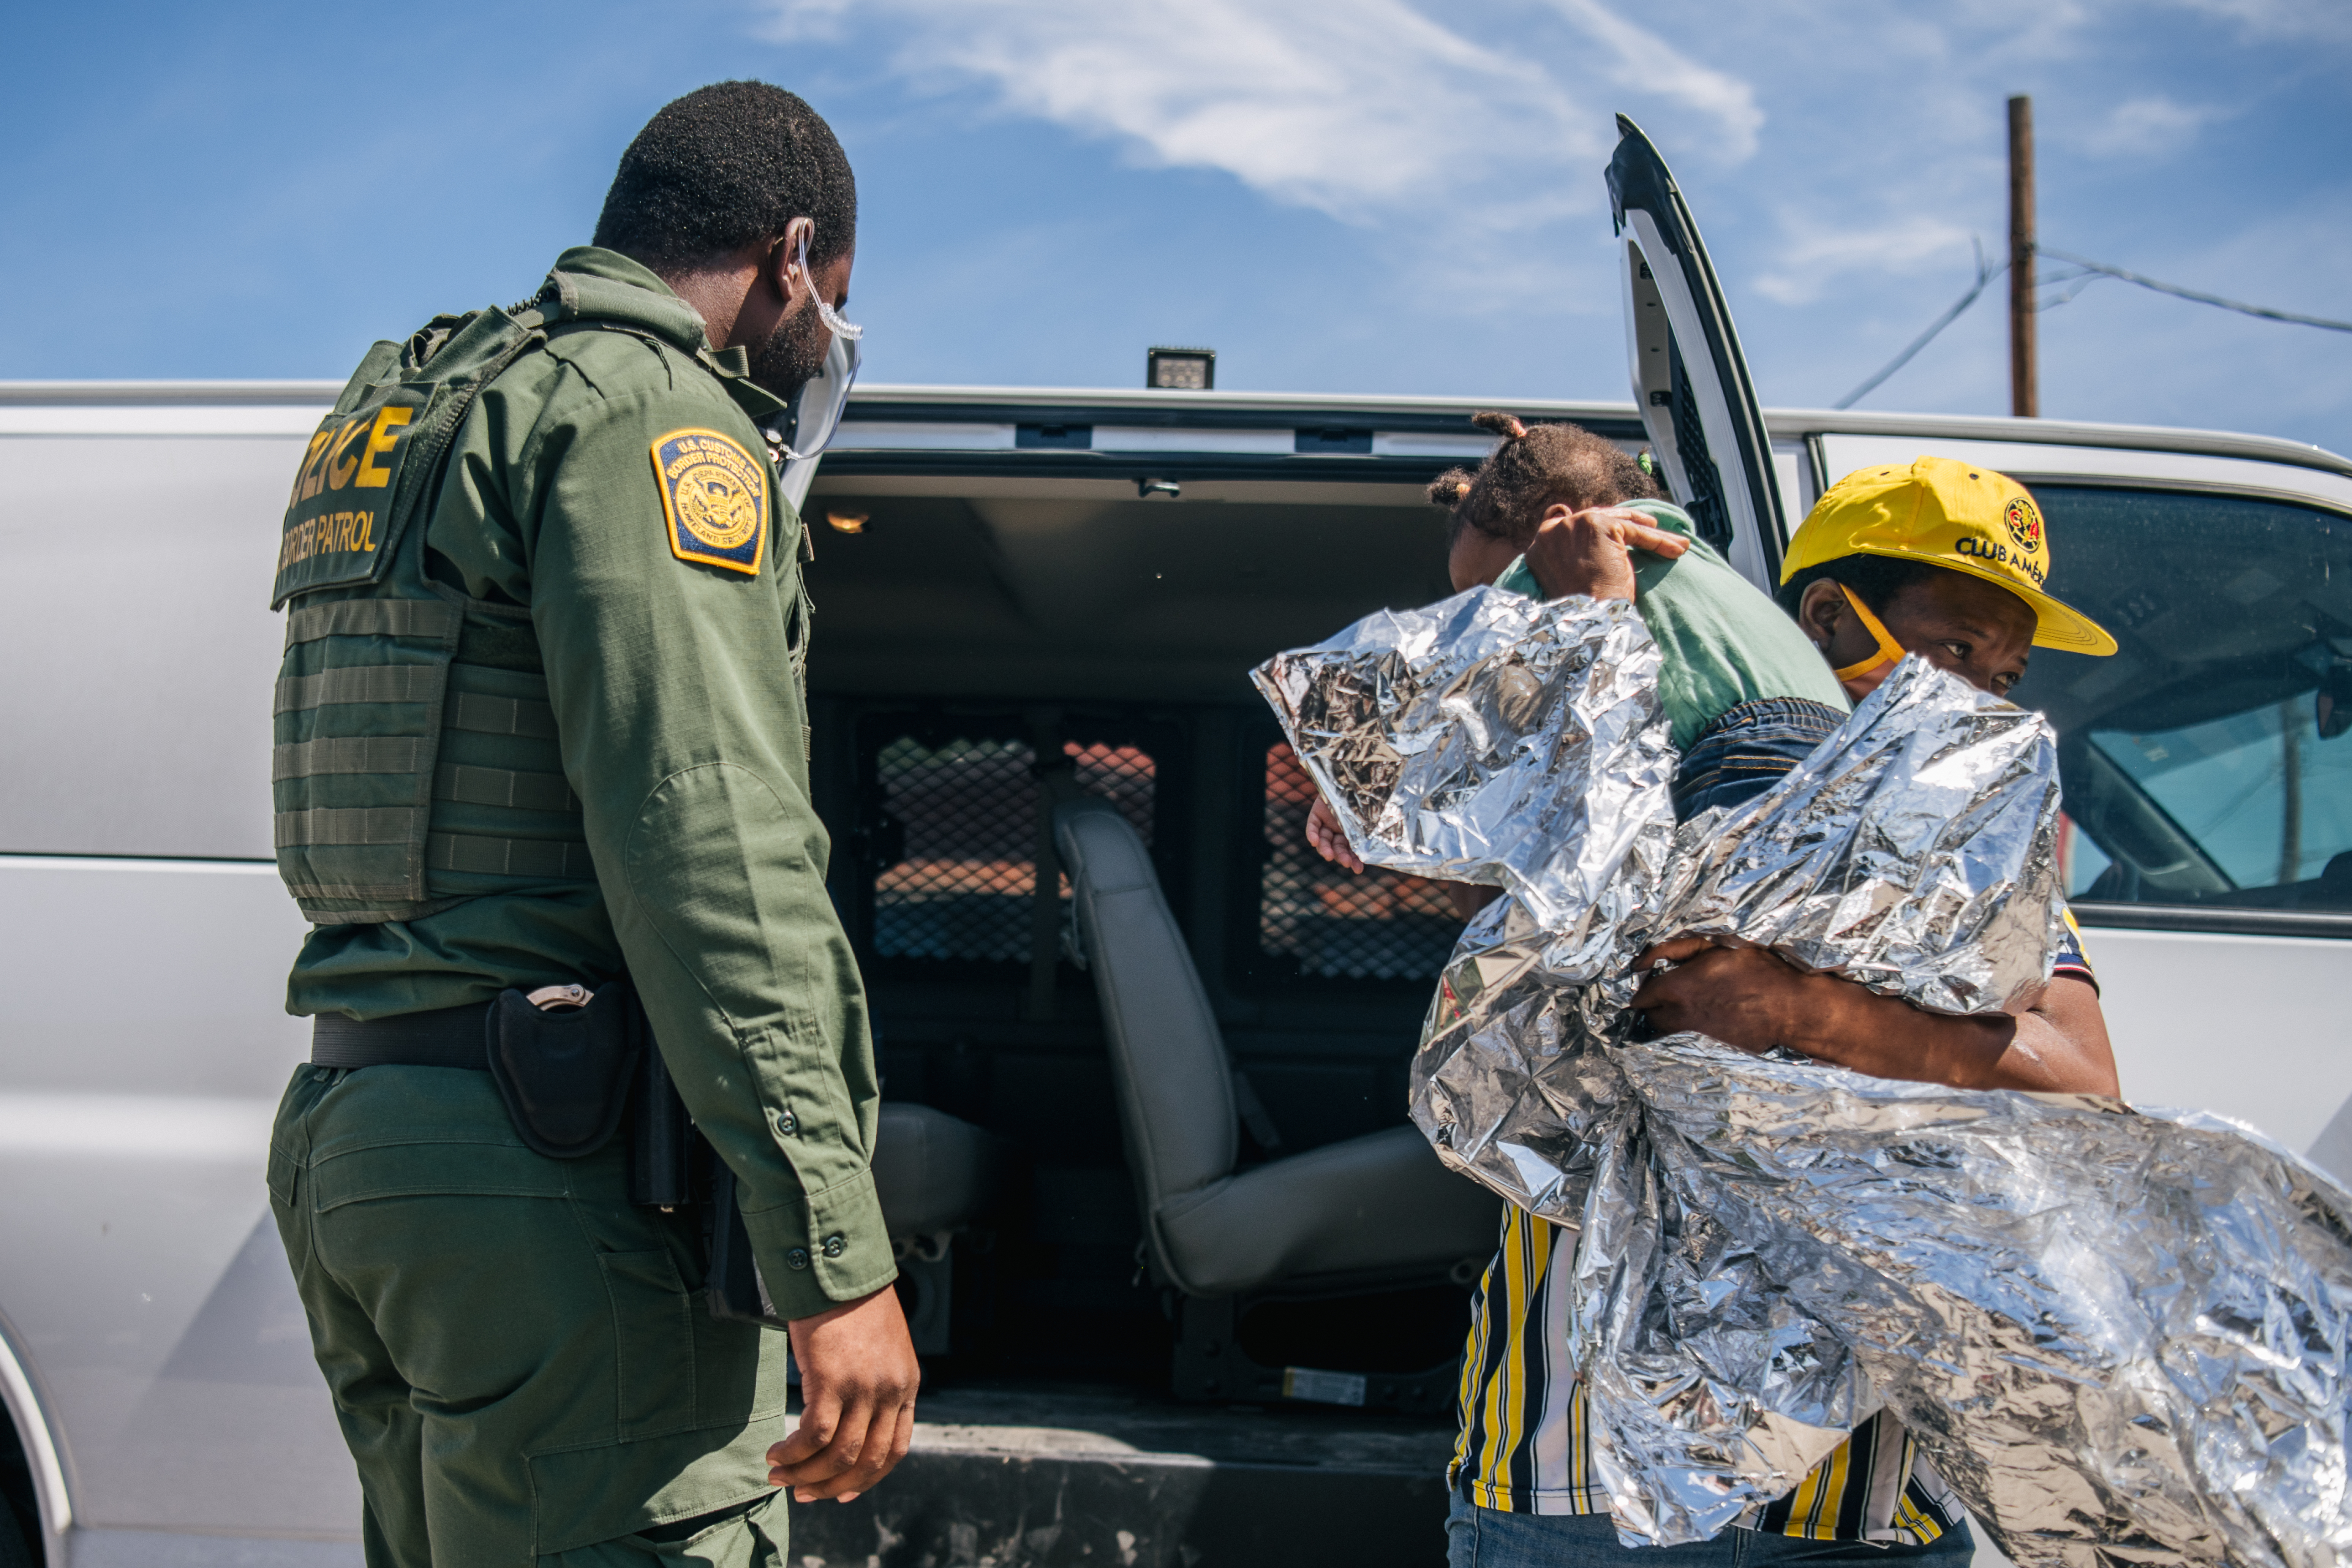 Una mujer migrante con un niño sale de una camioneta de la Patrulla Fronteriza después de llegar a las instalaciones de la Coalición Humanitaria Val Verde el 22 de septiembre de 2021 en Del Rio, Texas.